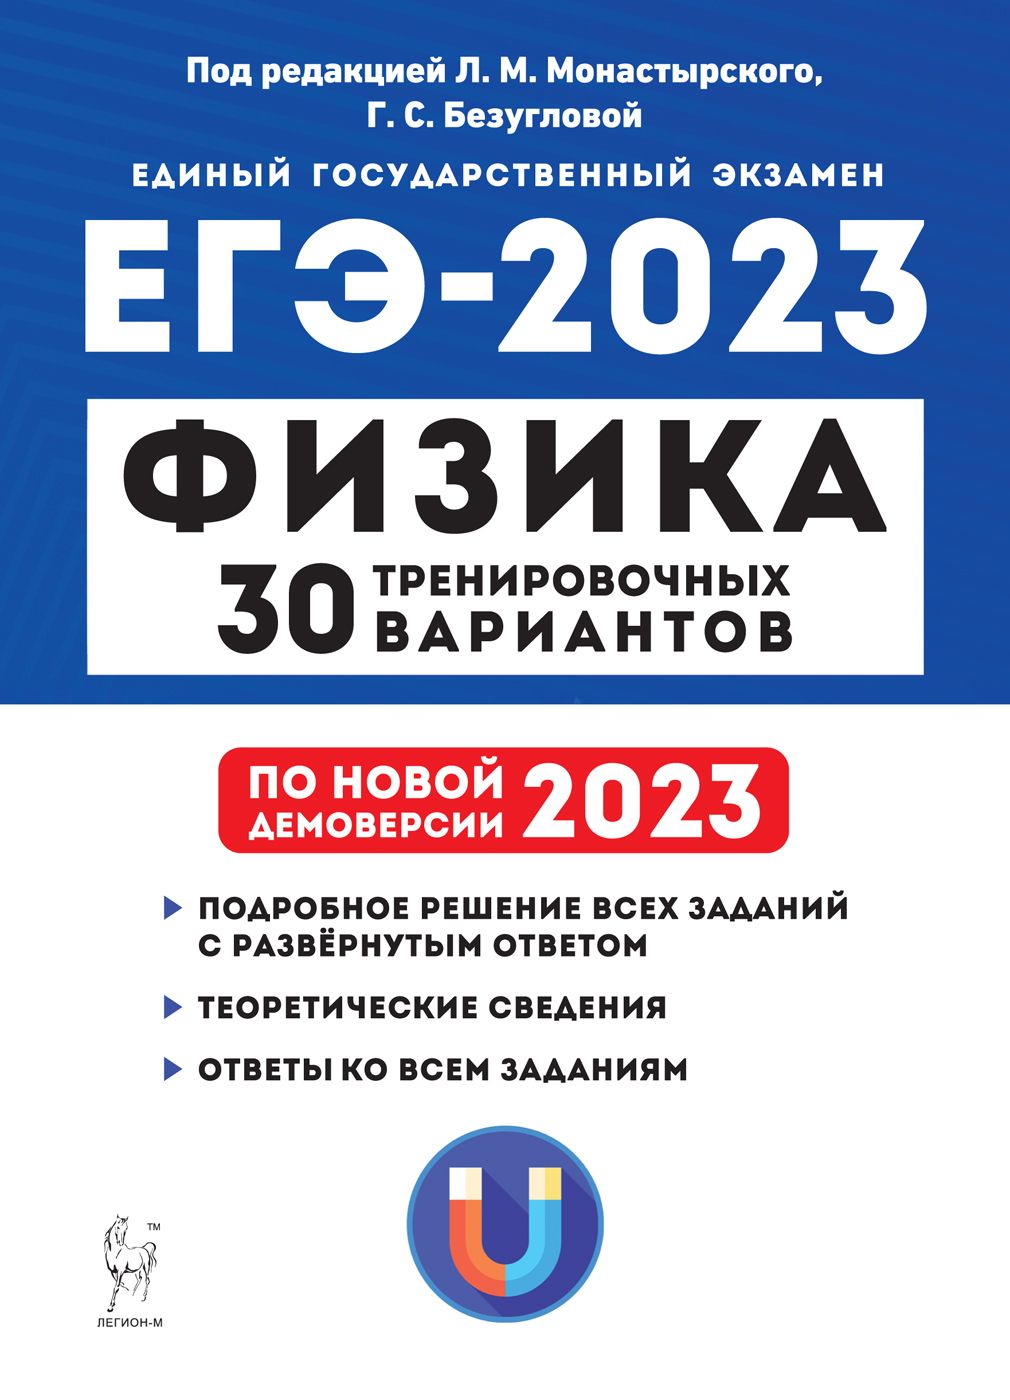 Физика. Подготовка к ЕГЭ-2023. 30 тренировочных вариантов по демоверсии 2023 года